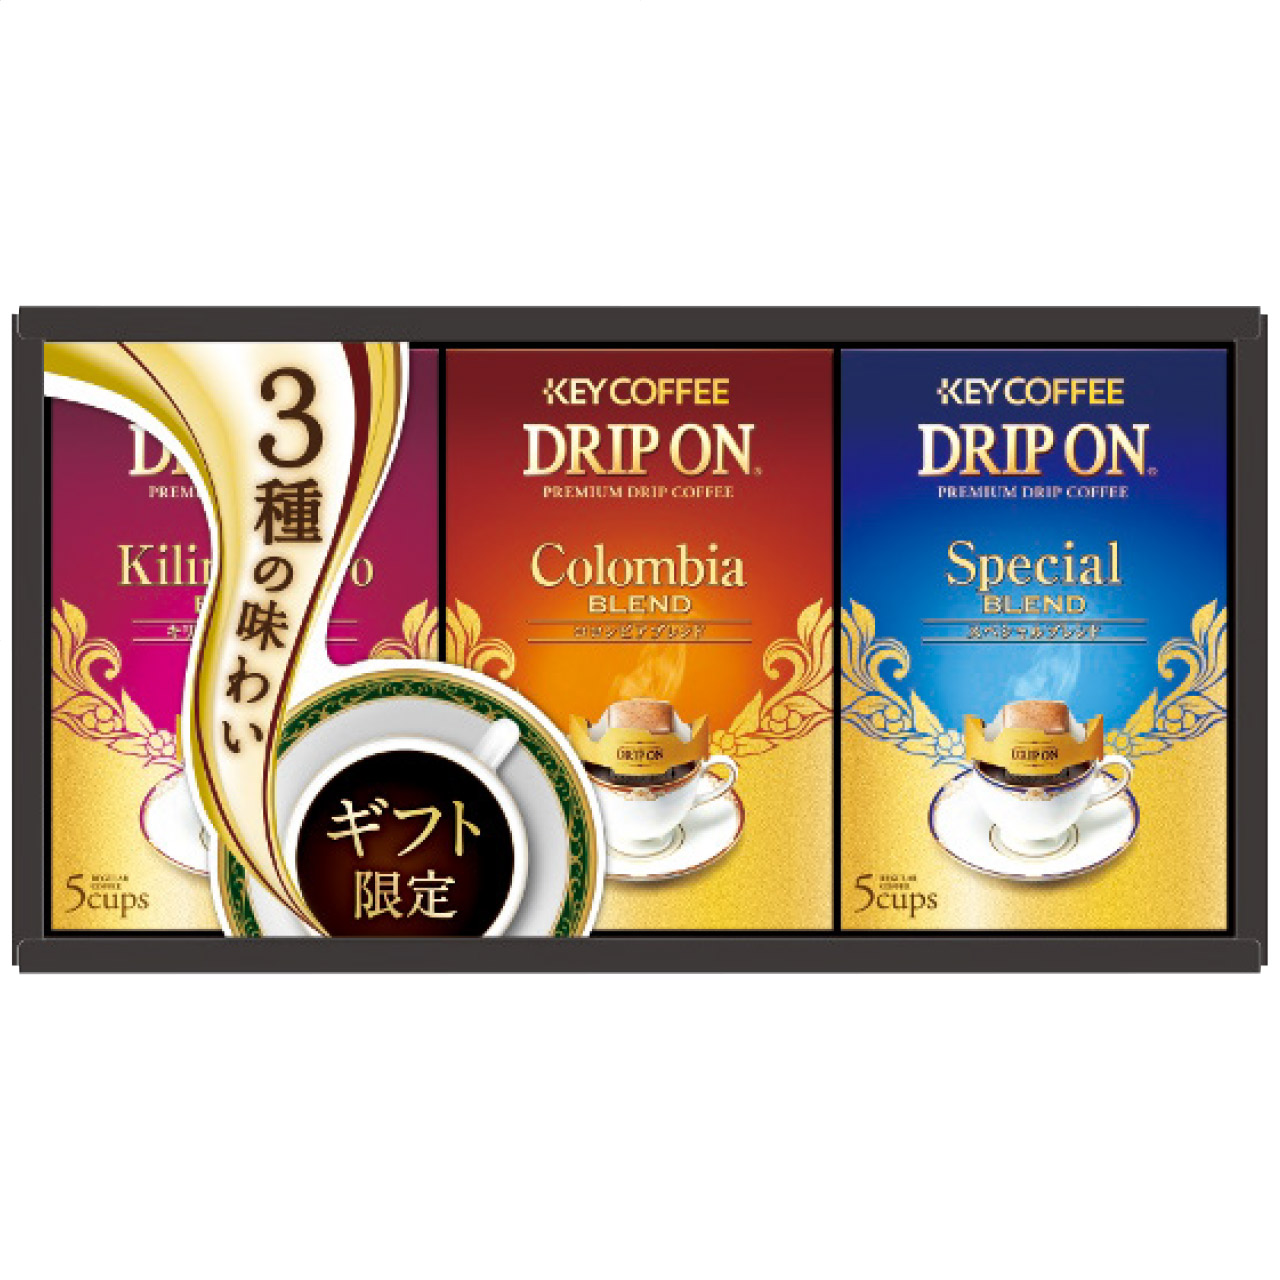 ドリップオン・レギュラーコーヒーギフト KDV-15M